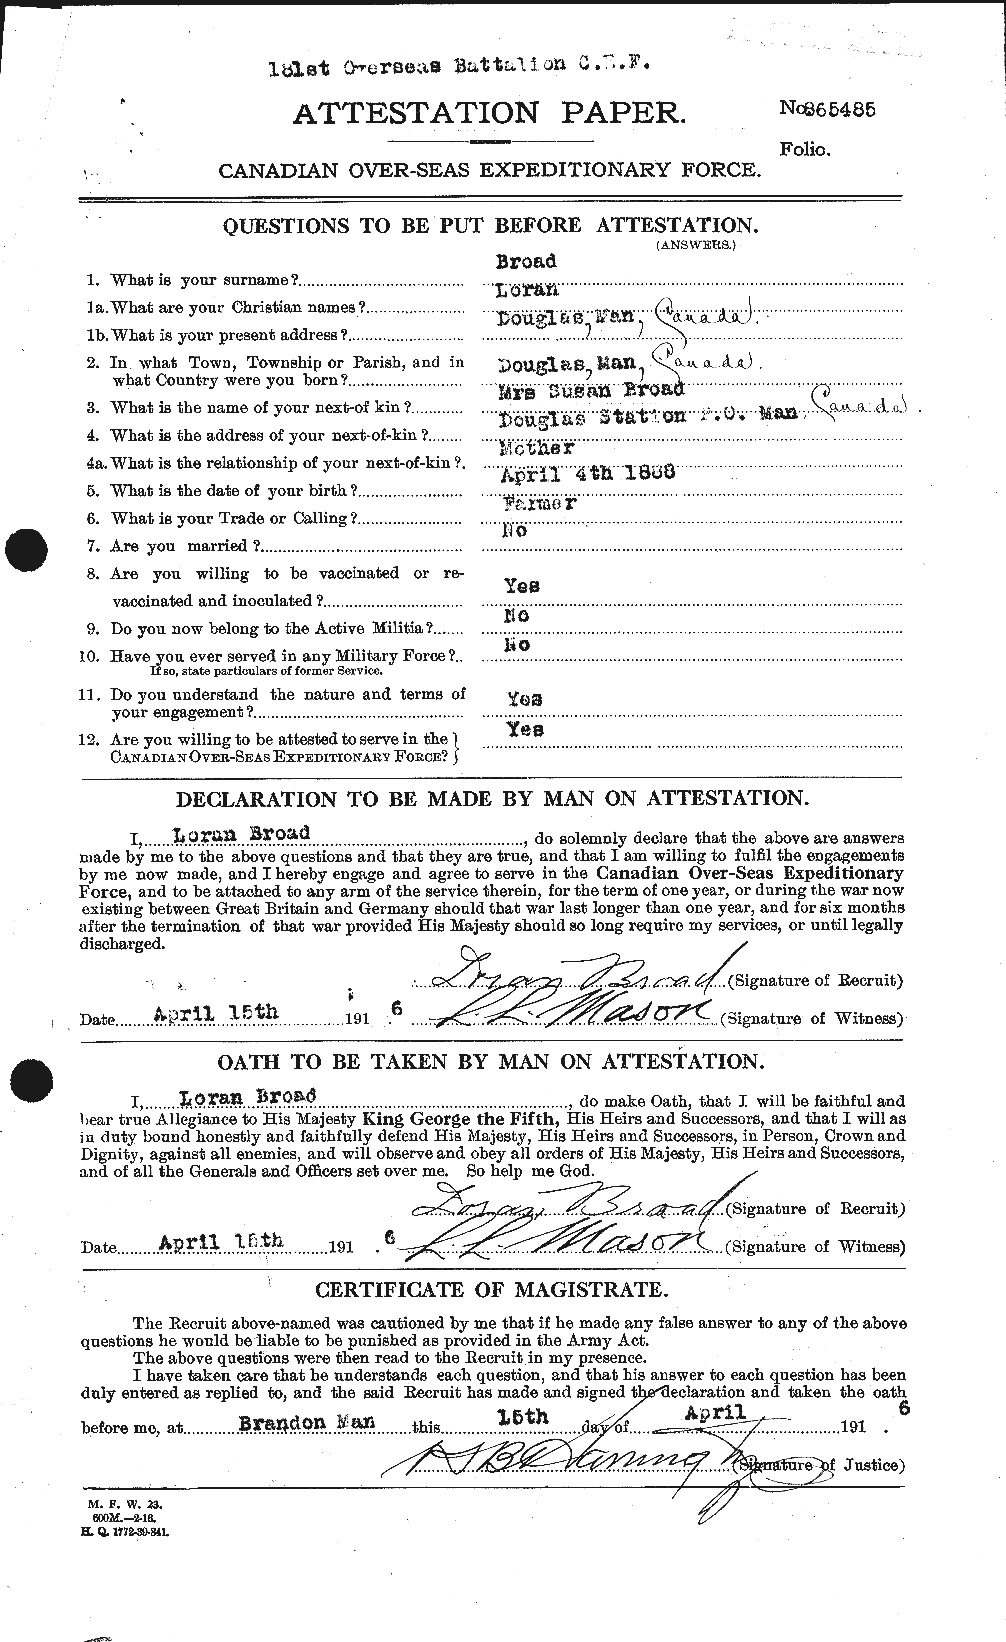 Dossiers du Personnel de la Première Guerre mondiale - CEC 262914a